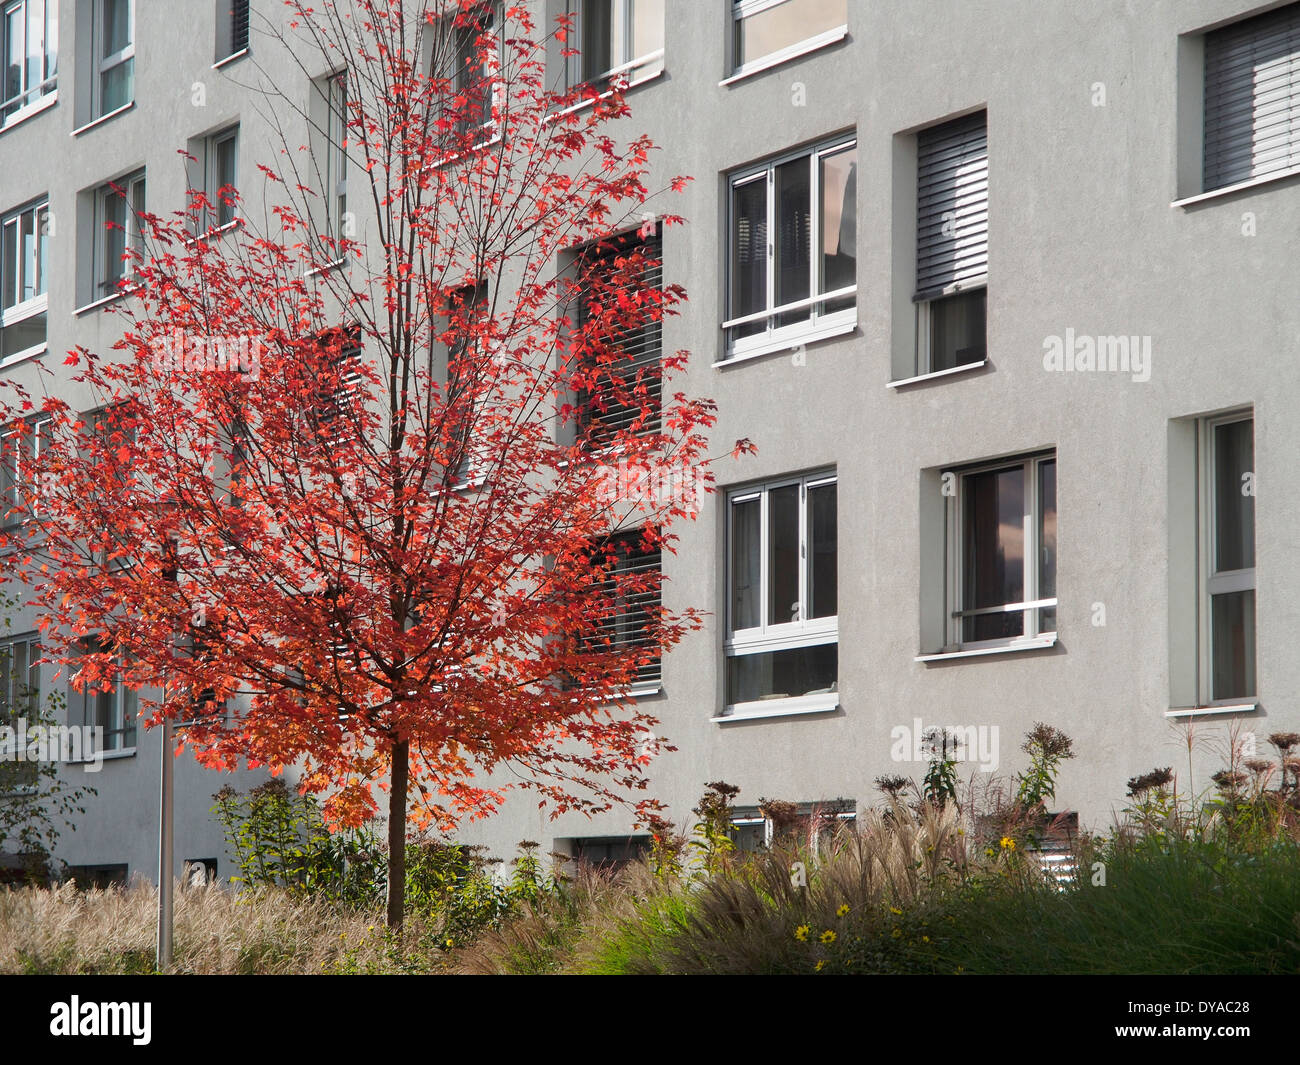 Zurich Oerlikon Schweiz Europa Ahorn Fenster Glattpark Grauen Herbst Pflanze Siedlung Wohnungen Leben Haus Mieten Block Stockfotografie Alamy